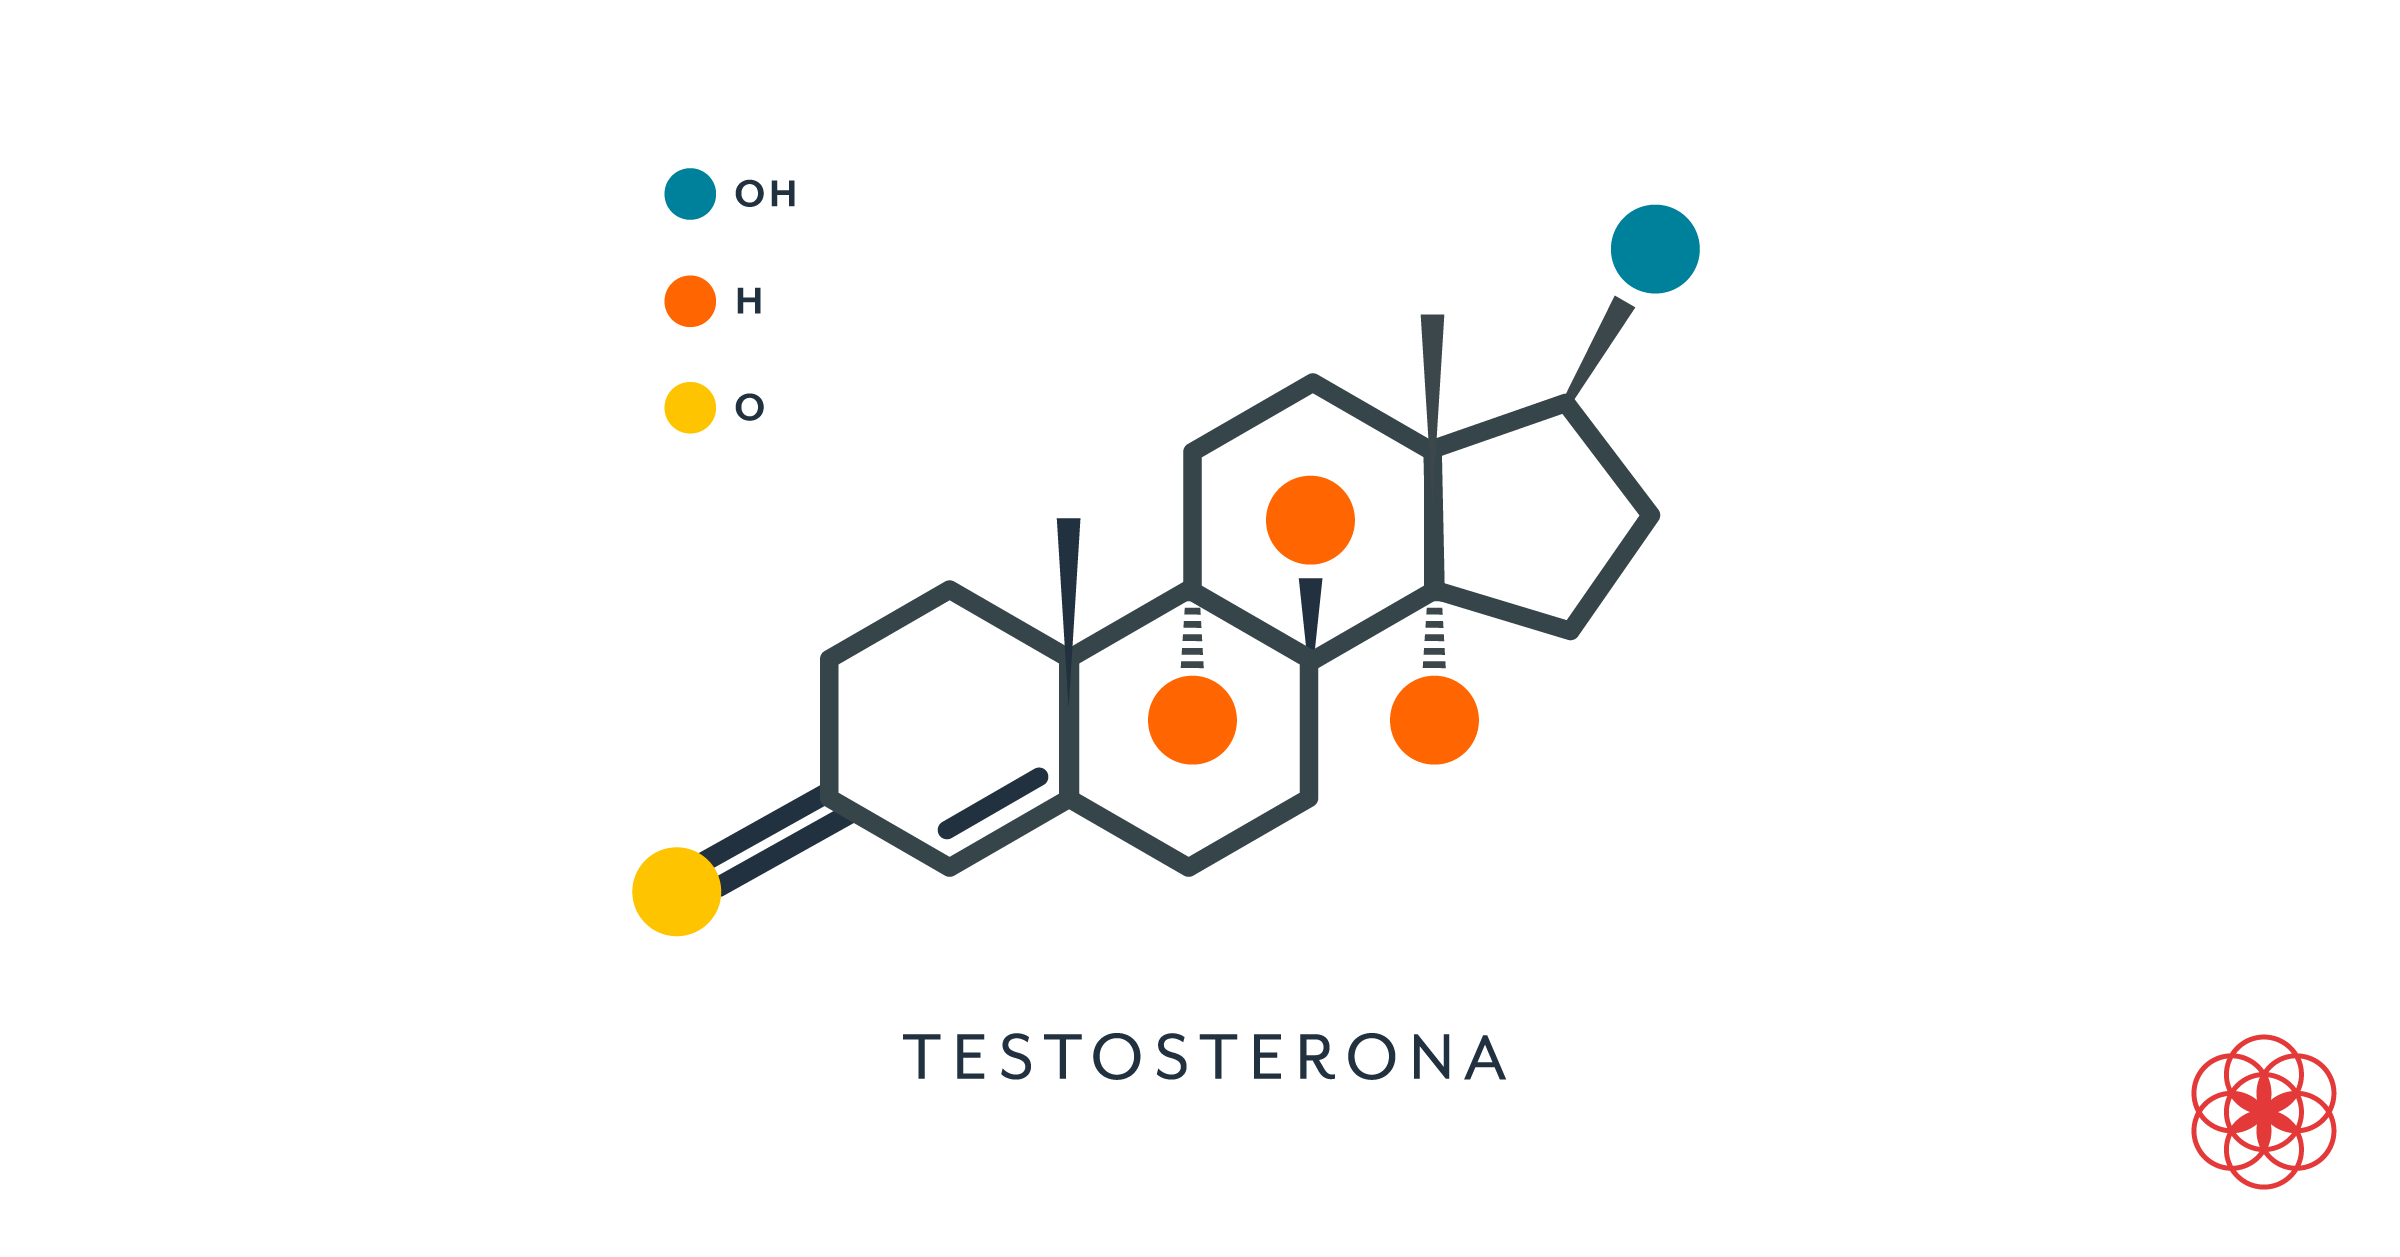 La testosterona es parte de diversos tratamientos, entre ellos, mejorar la masa muscular.